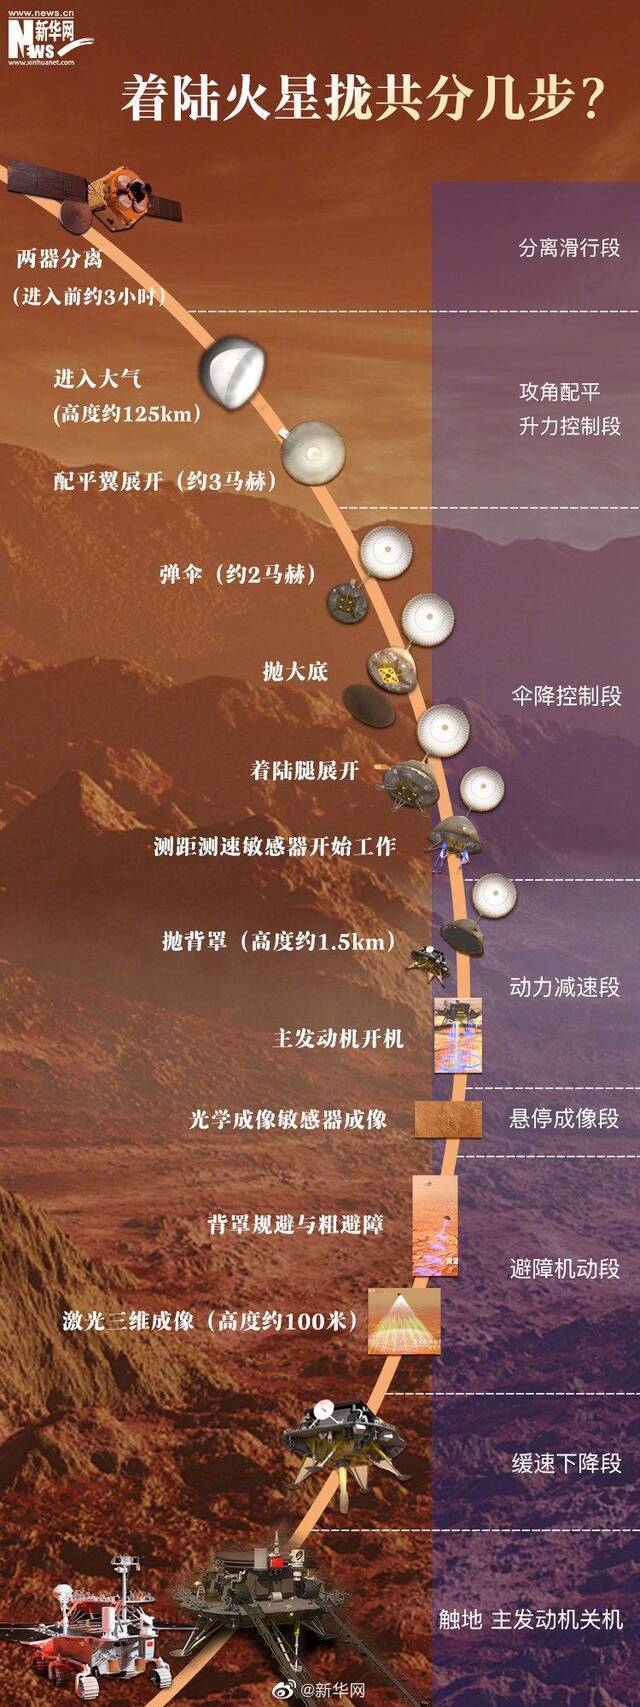 6图看懂中国火星探测器安抵火星